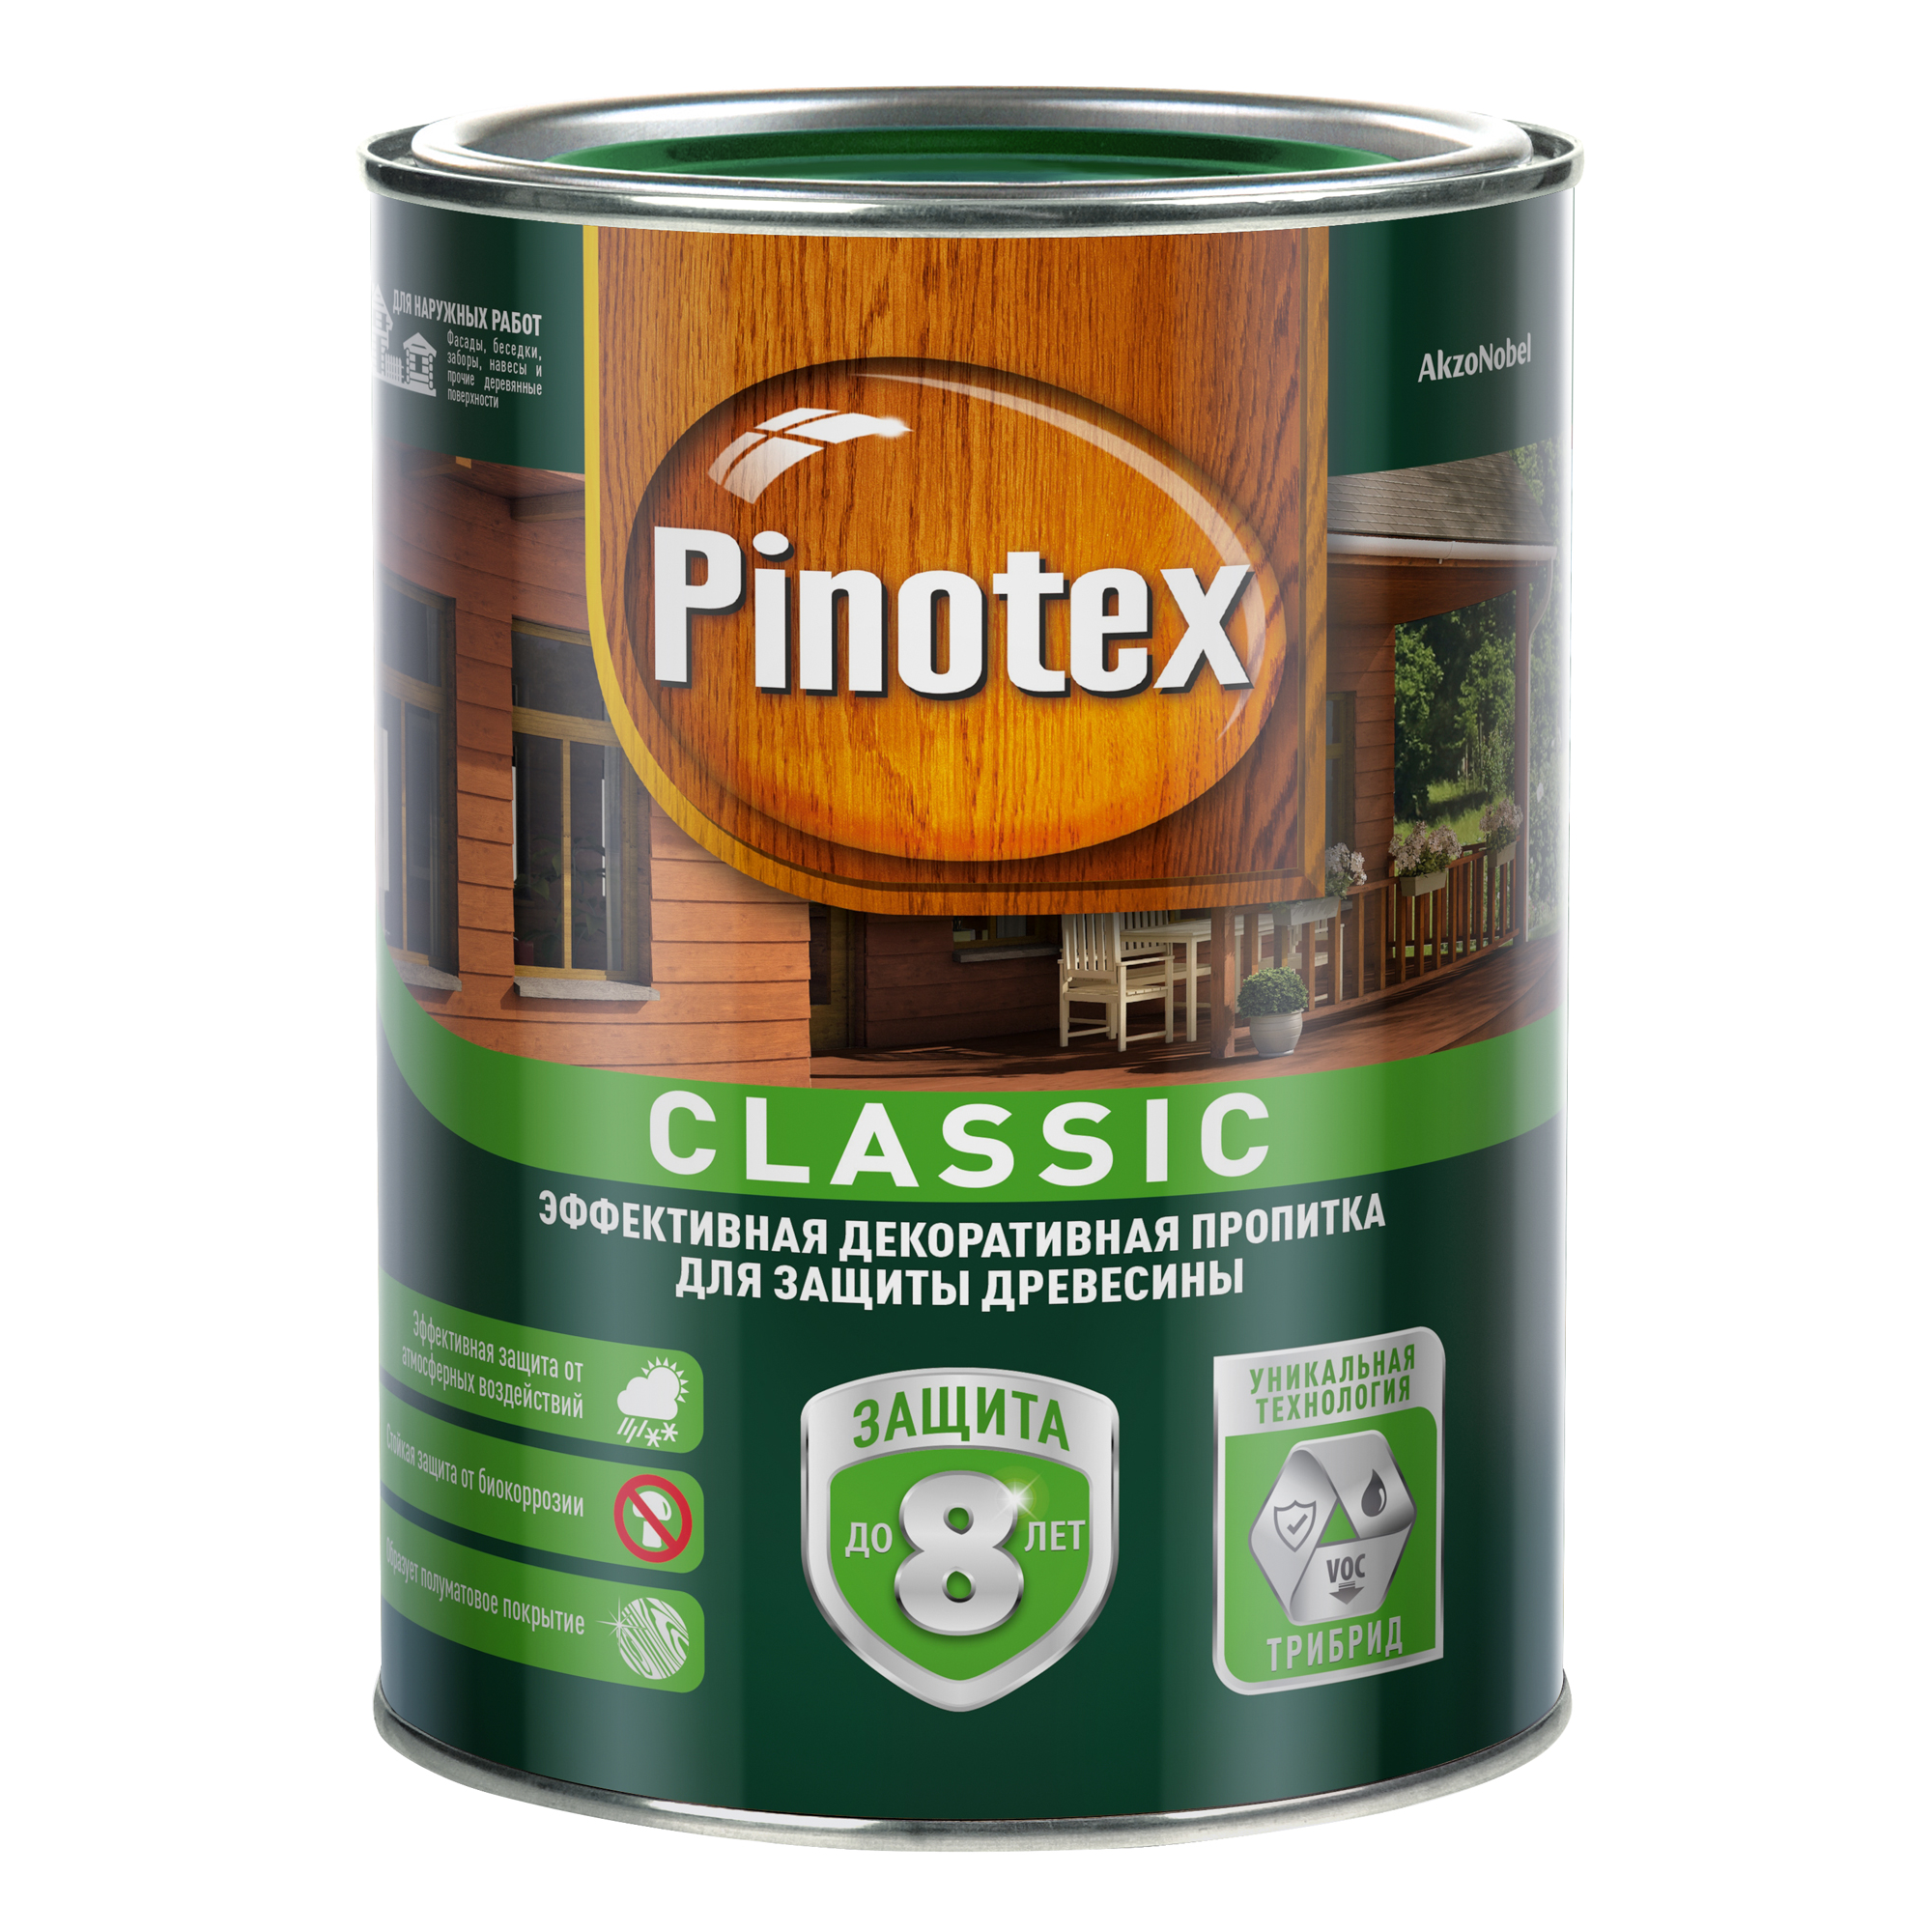 Пропитка Pinotex classic 1л бесцветный